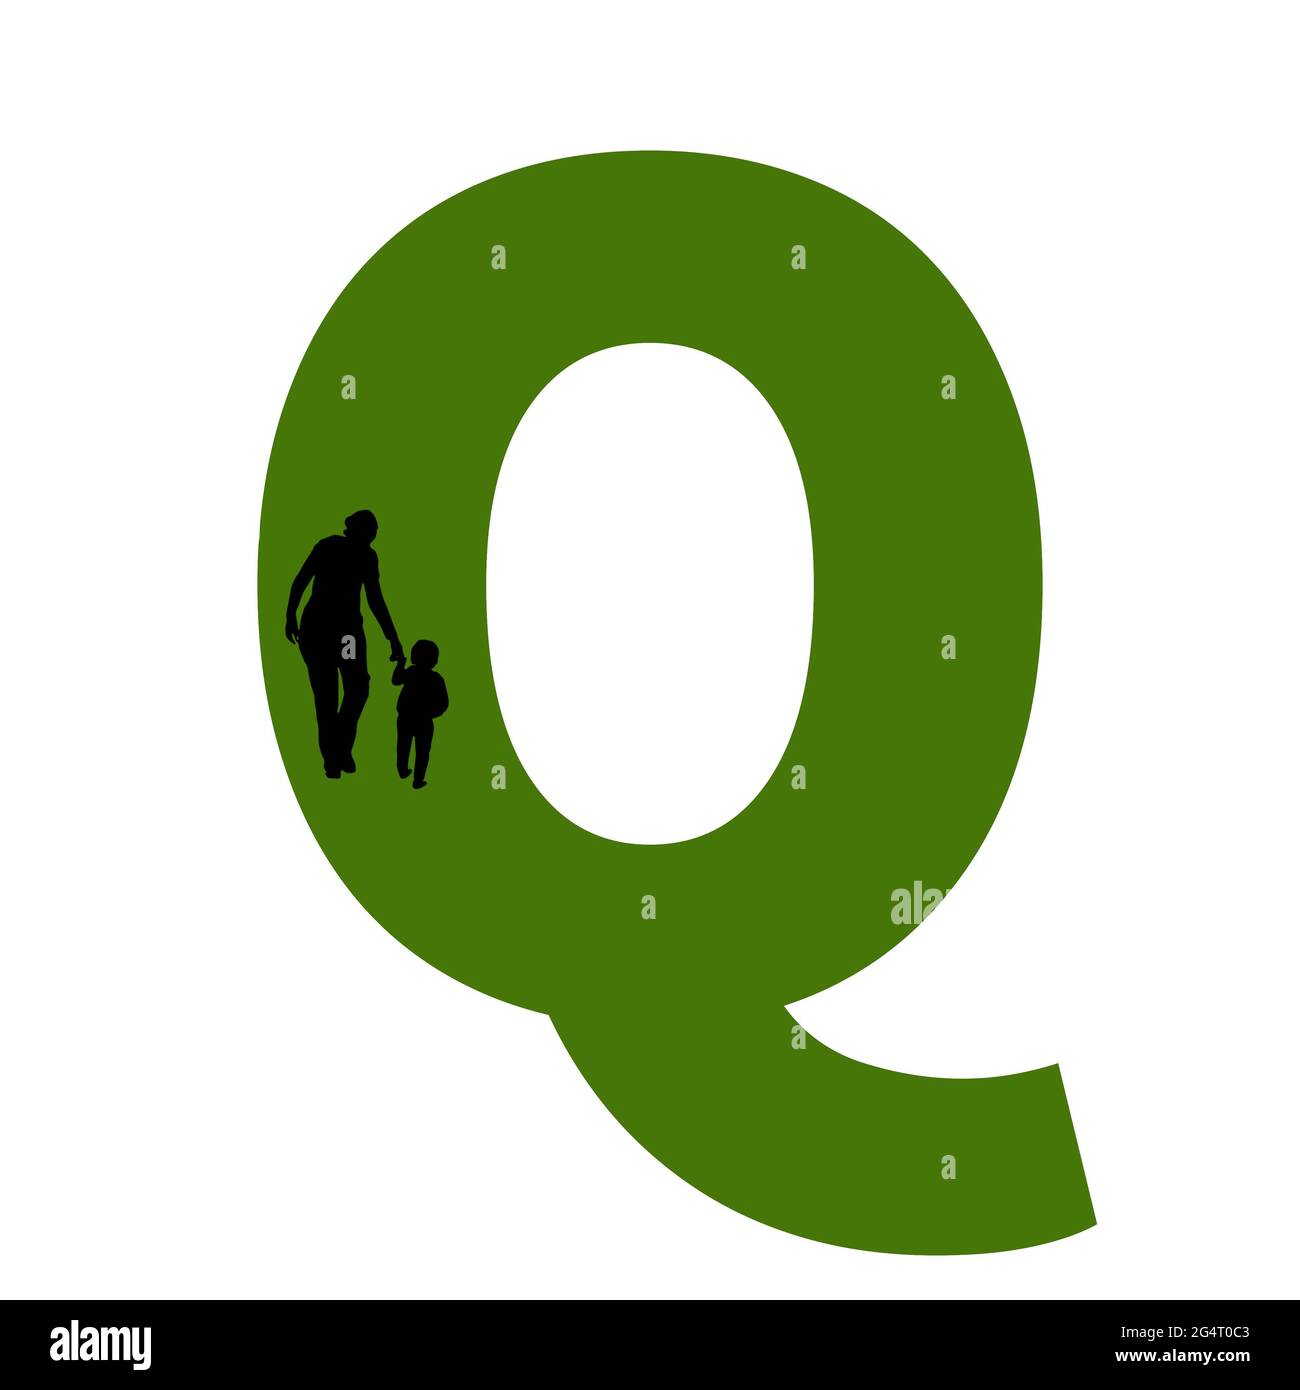 Lettre Q de l'alphabet avec silhouette d'une mère et d'un enfant marchant, en vert et noir Banque D'Images